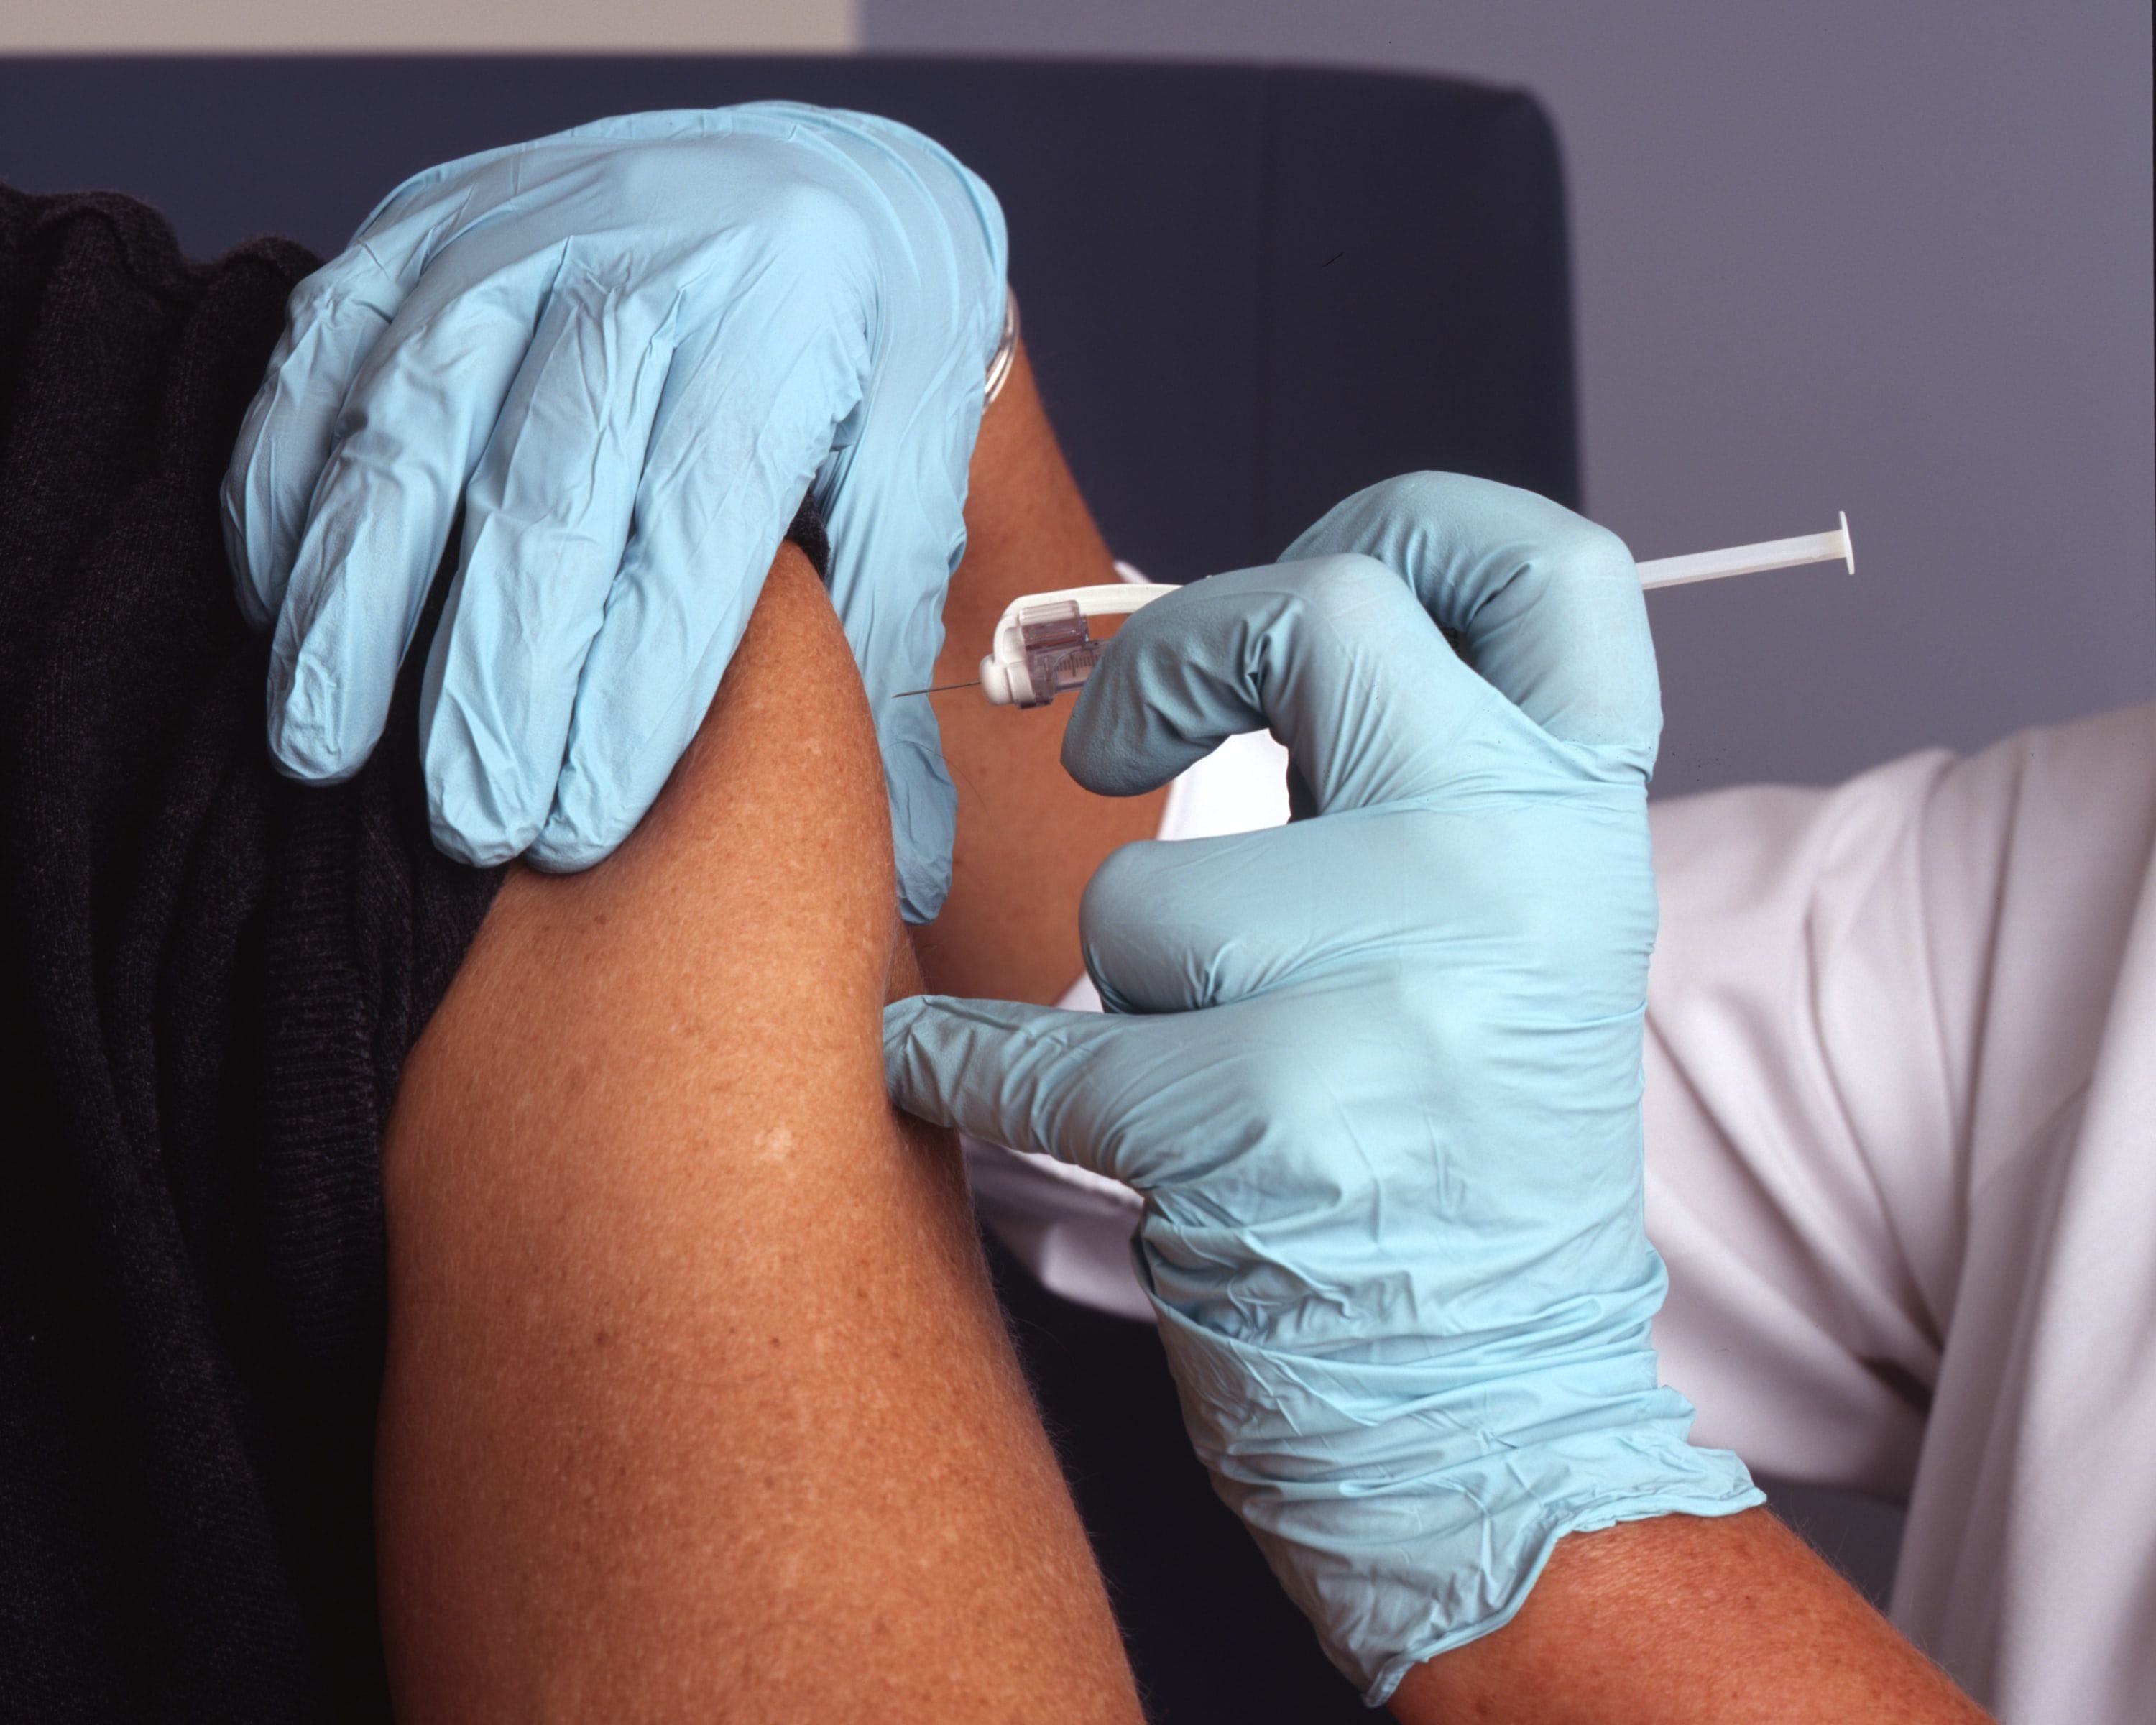 Pfizer COVID-19 vaccine now 95 per cent effective